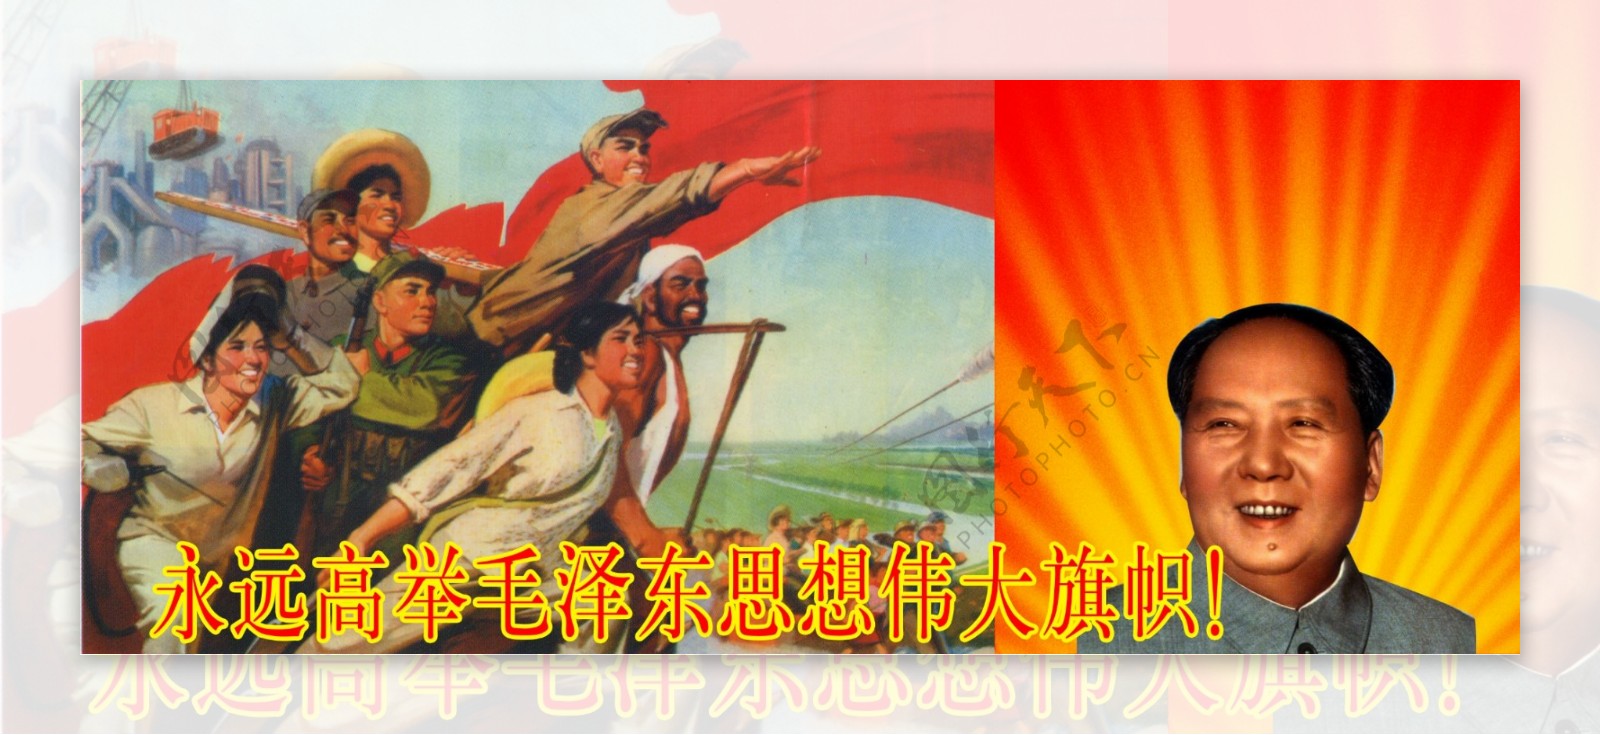 高举毛泽东伟大旗帜